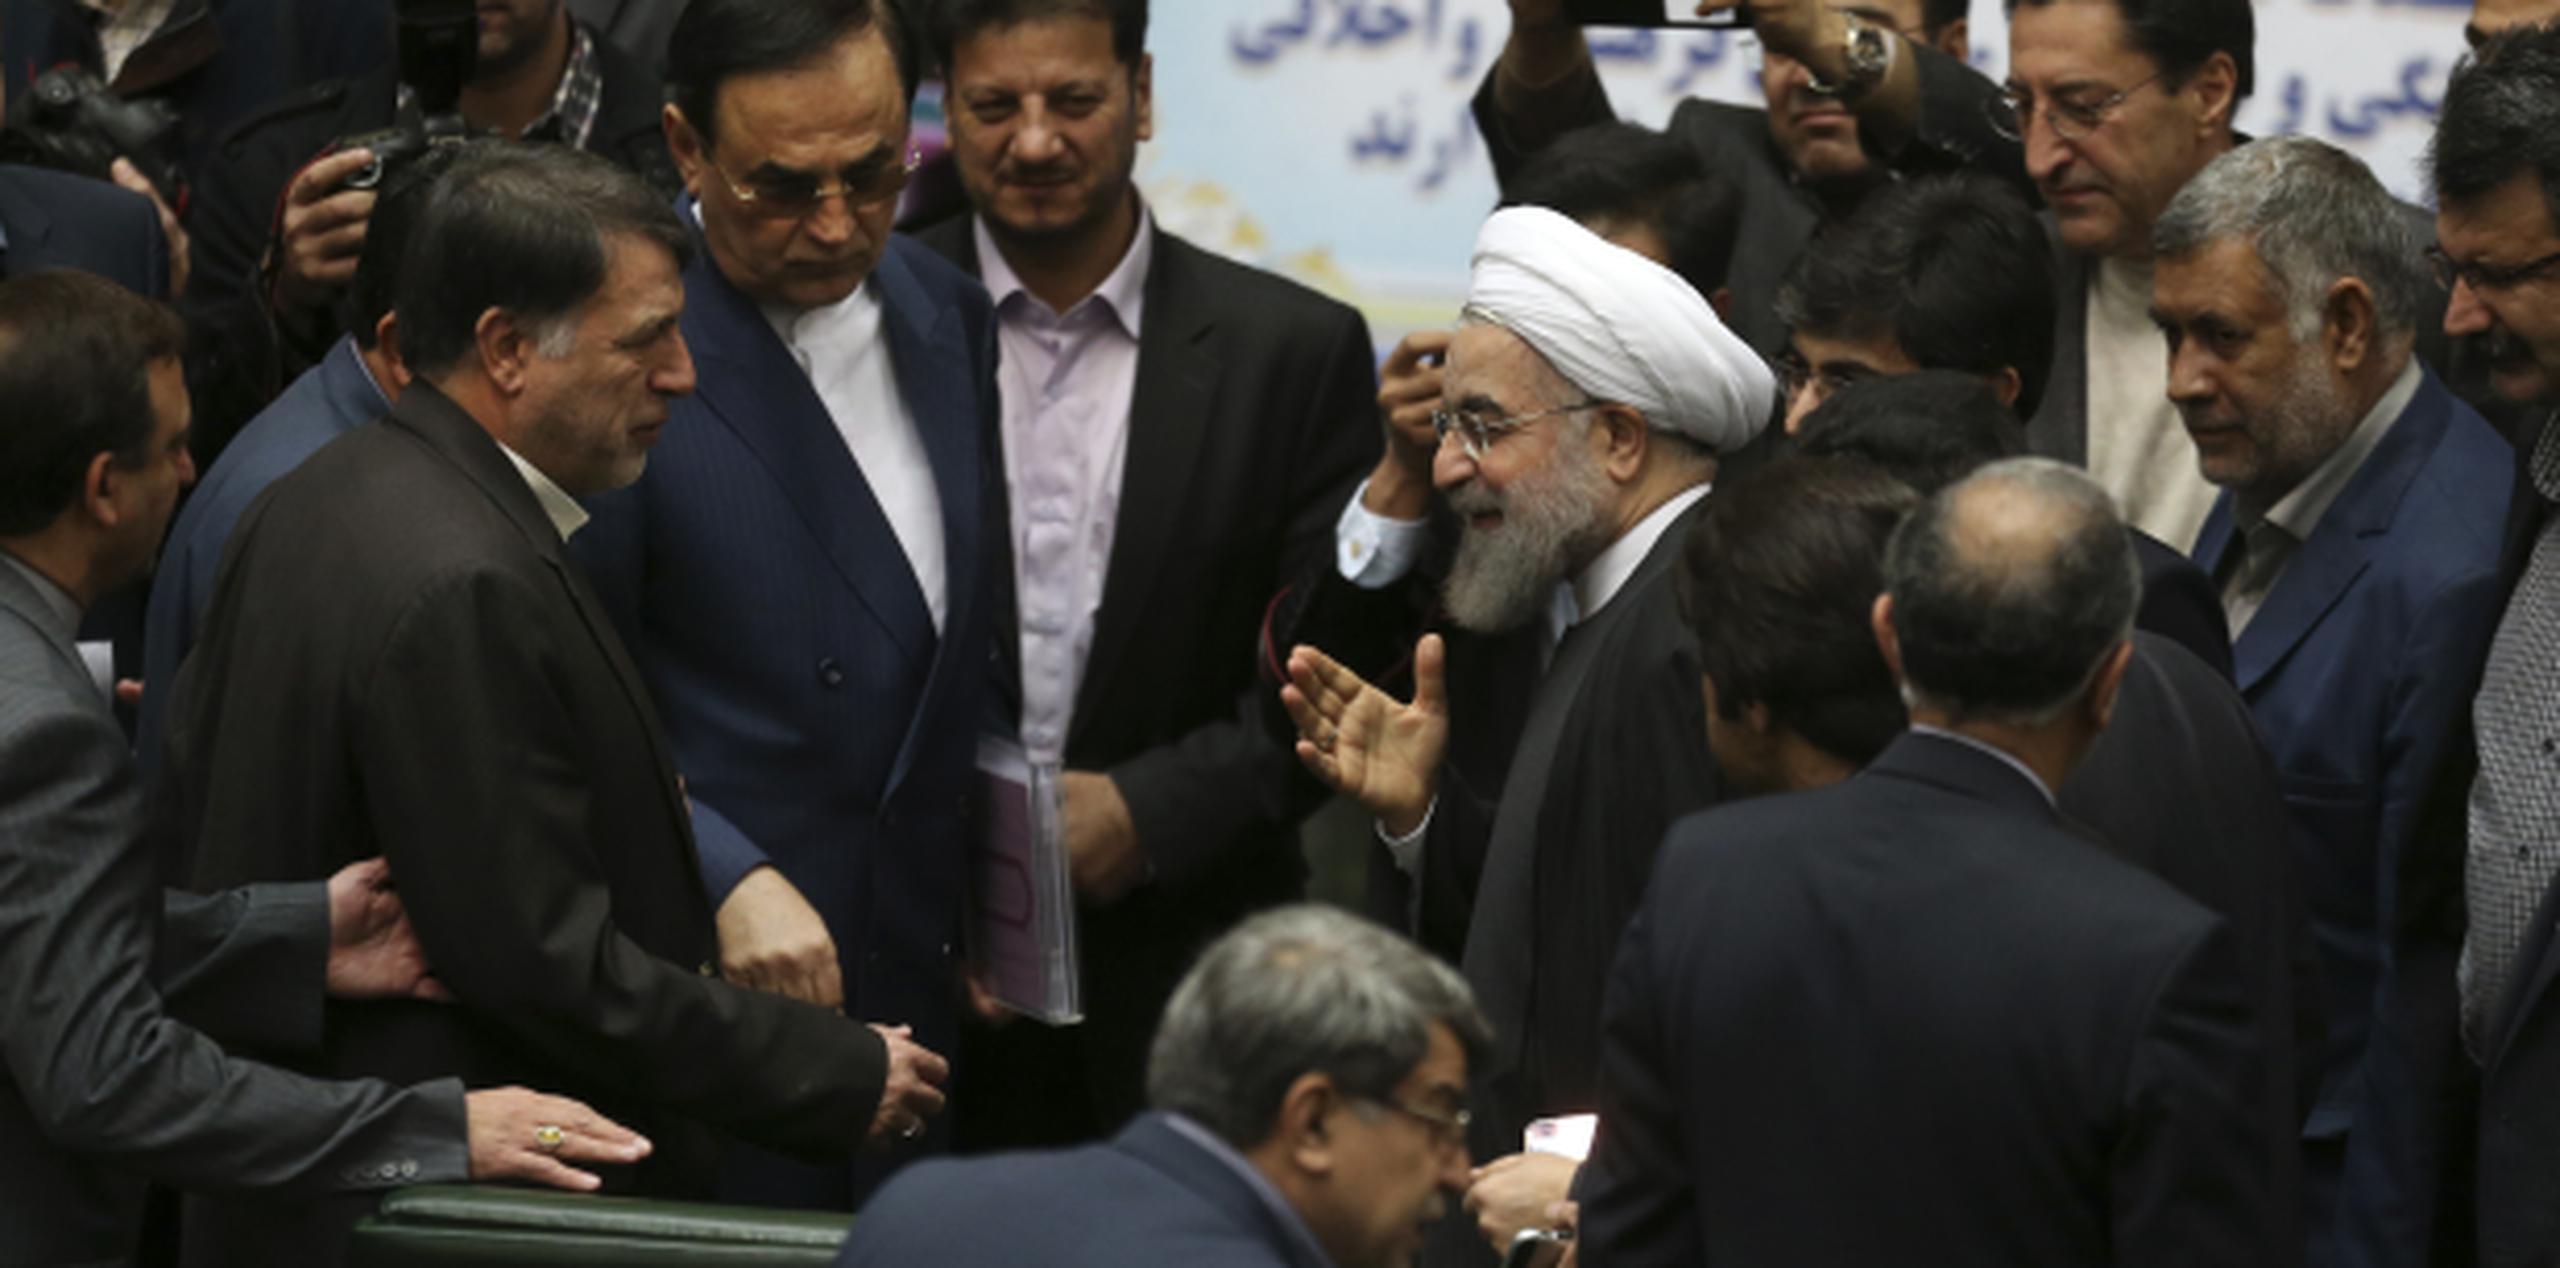 El presidente iraní Hassan Rouhani, con turbante,saluda a legisladores tras su mensaje televisado sobre el acuerdo nuclear. (AP)